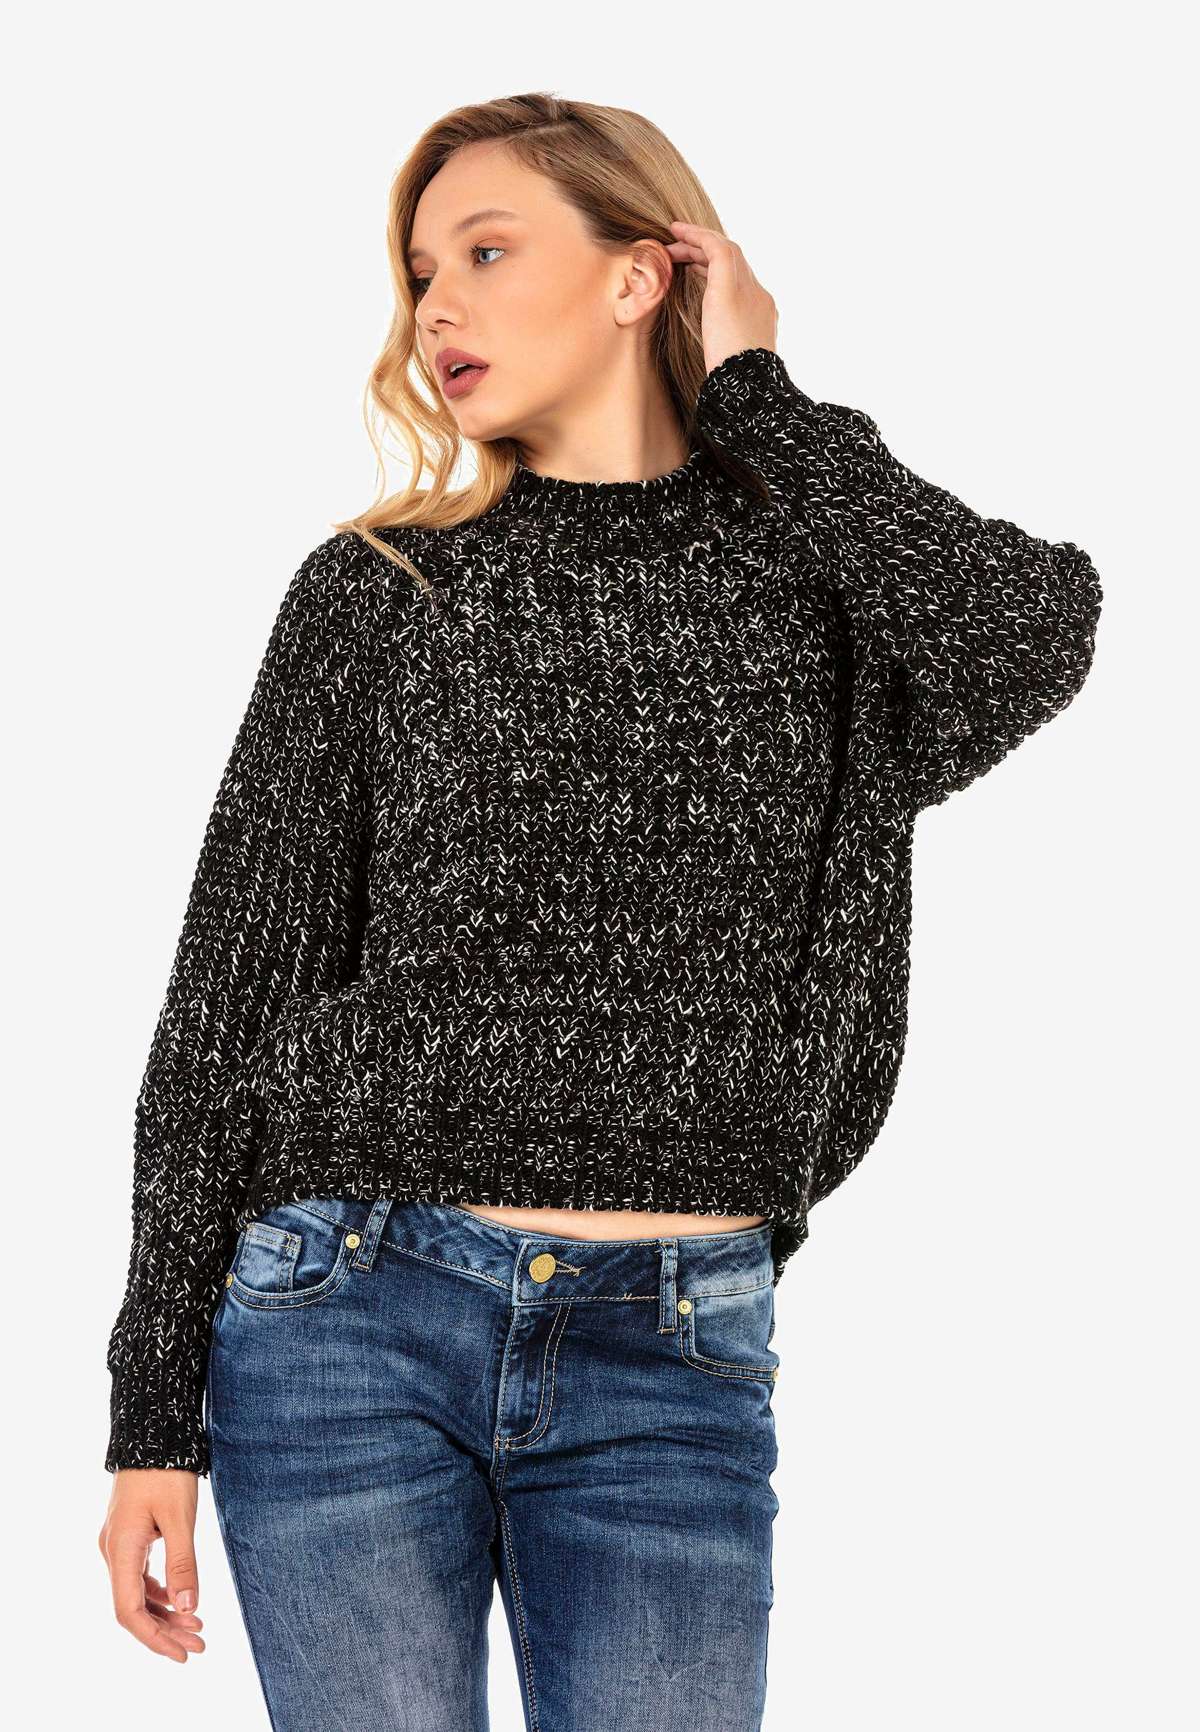 Вязаный свитер в пестрый дизайн